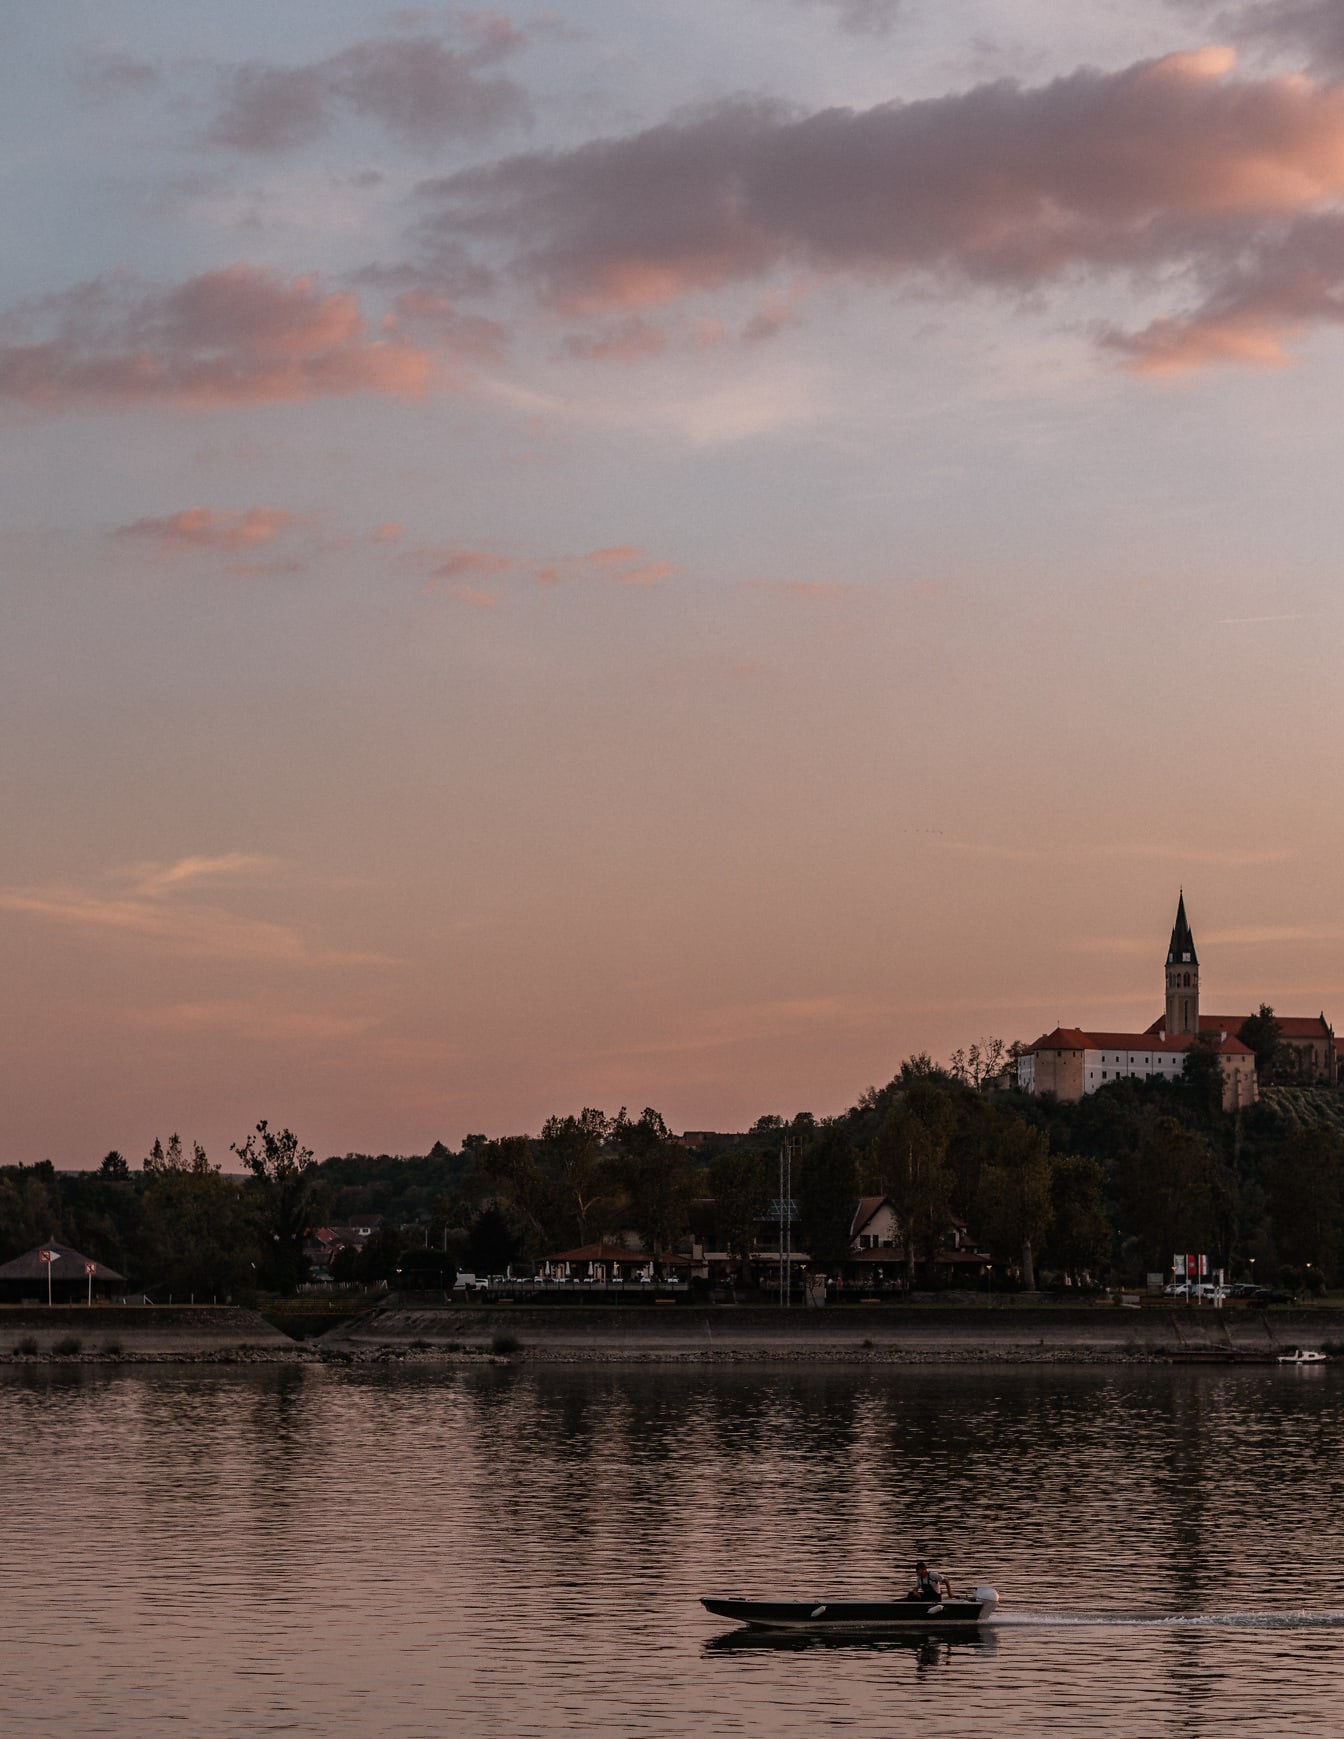 Cer crepuscular deasupra turnului bisericii de pe malul Dunării